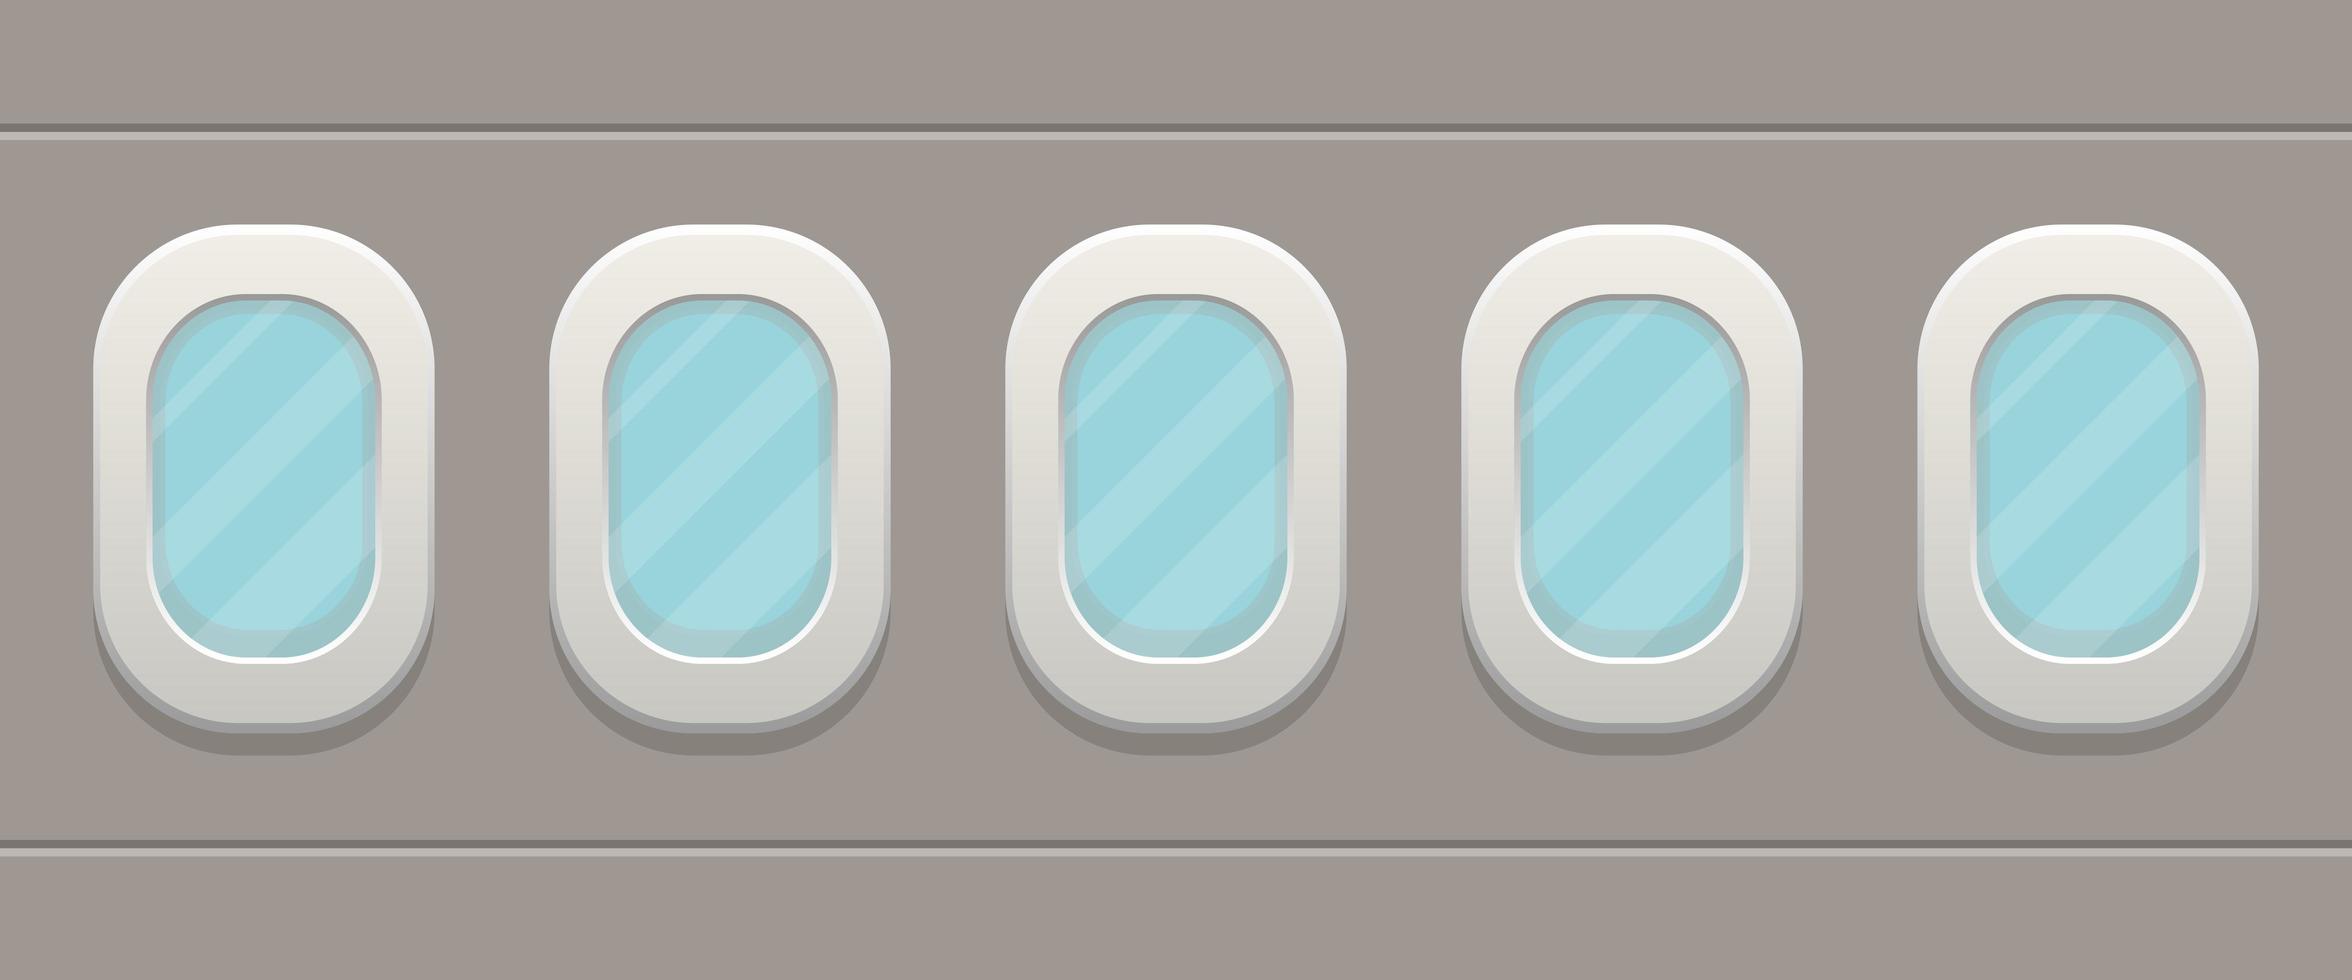 vliegtuig windows ontwerp vector